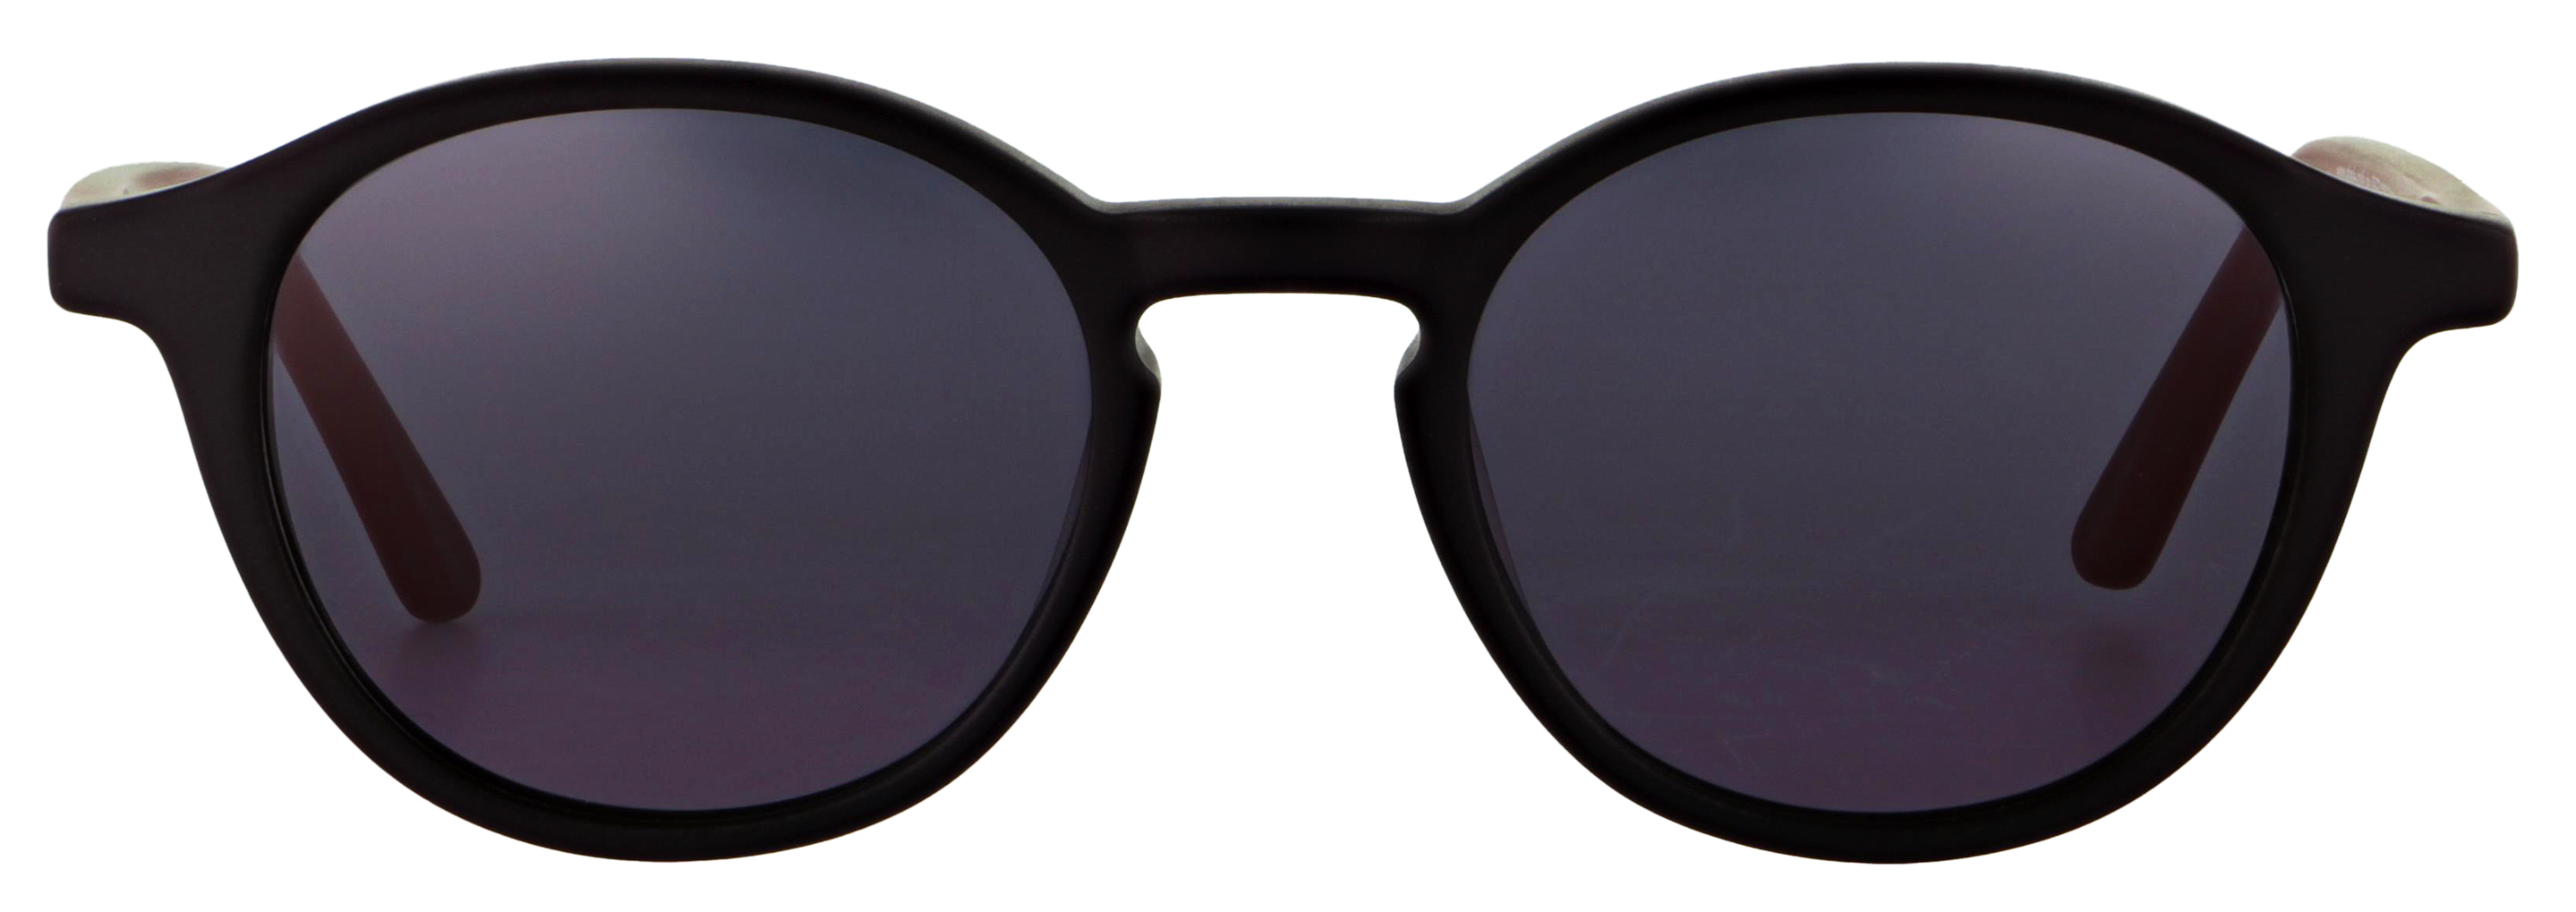 Das Bild zeigt die Sonnenbrille 718752 von der Marke Abele Optik in schwarz matt.